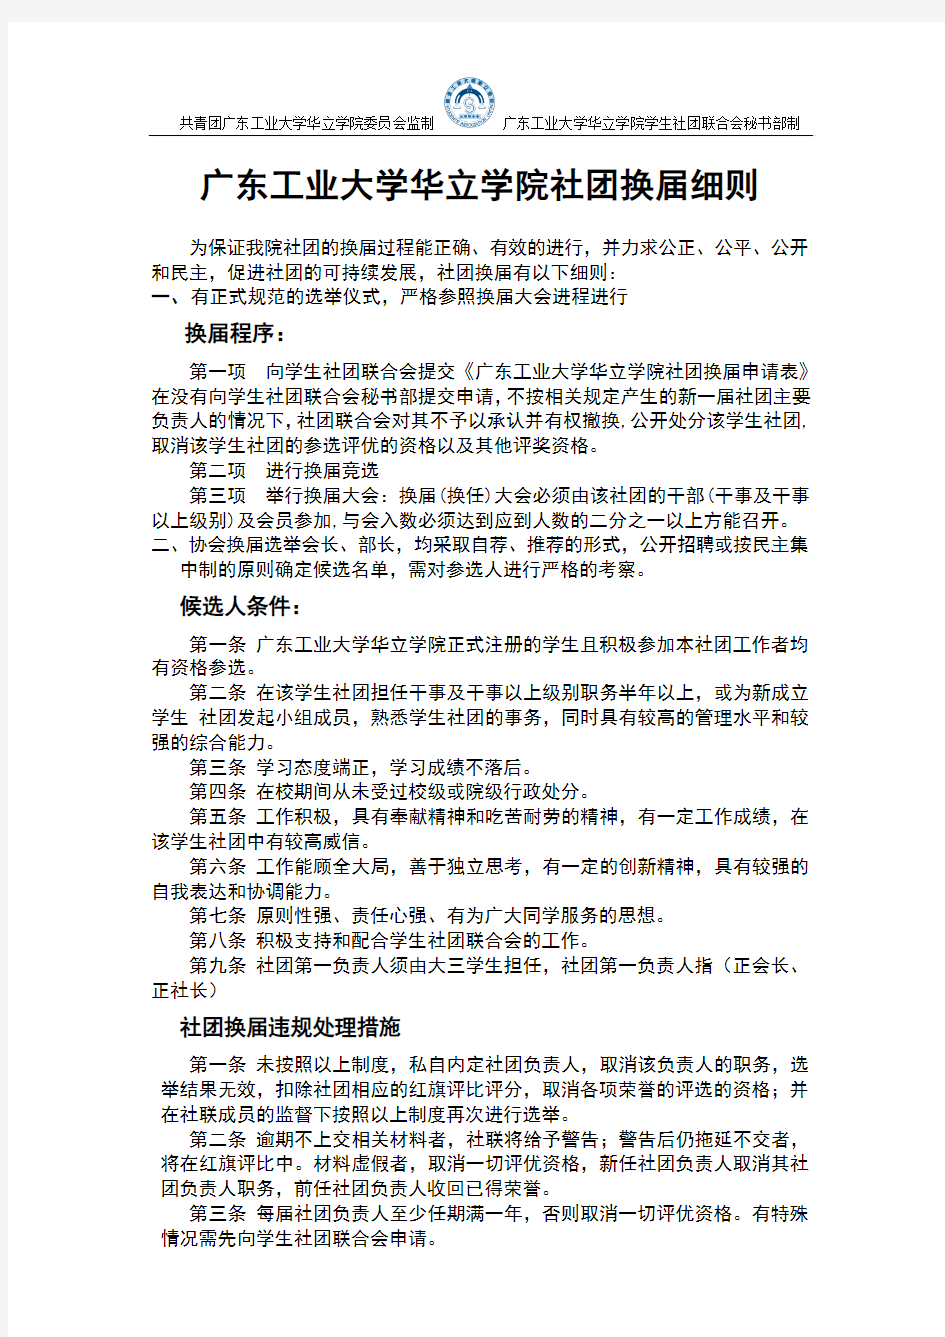 12.05.22广东工业大学华立学院社团换届细则